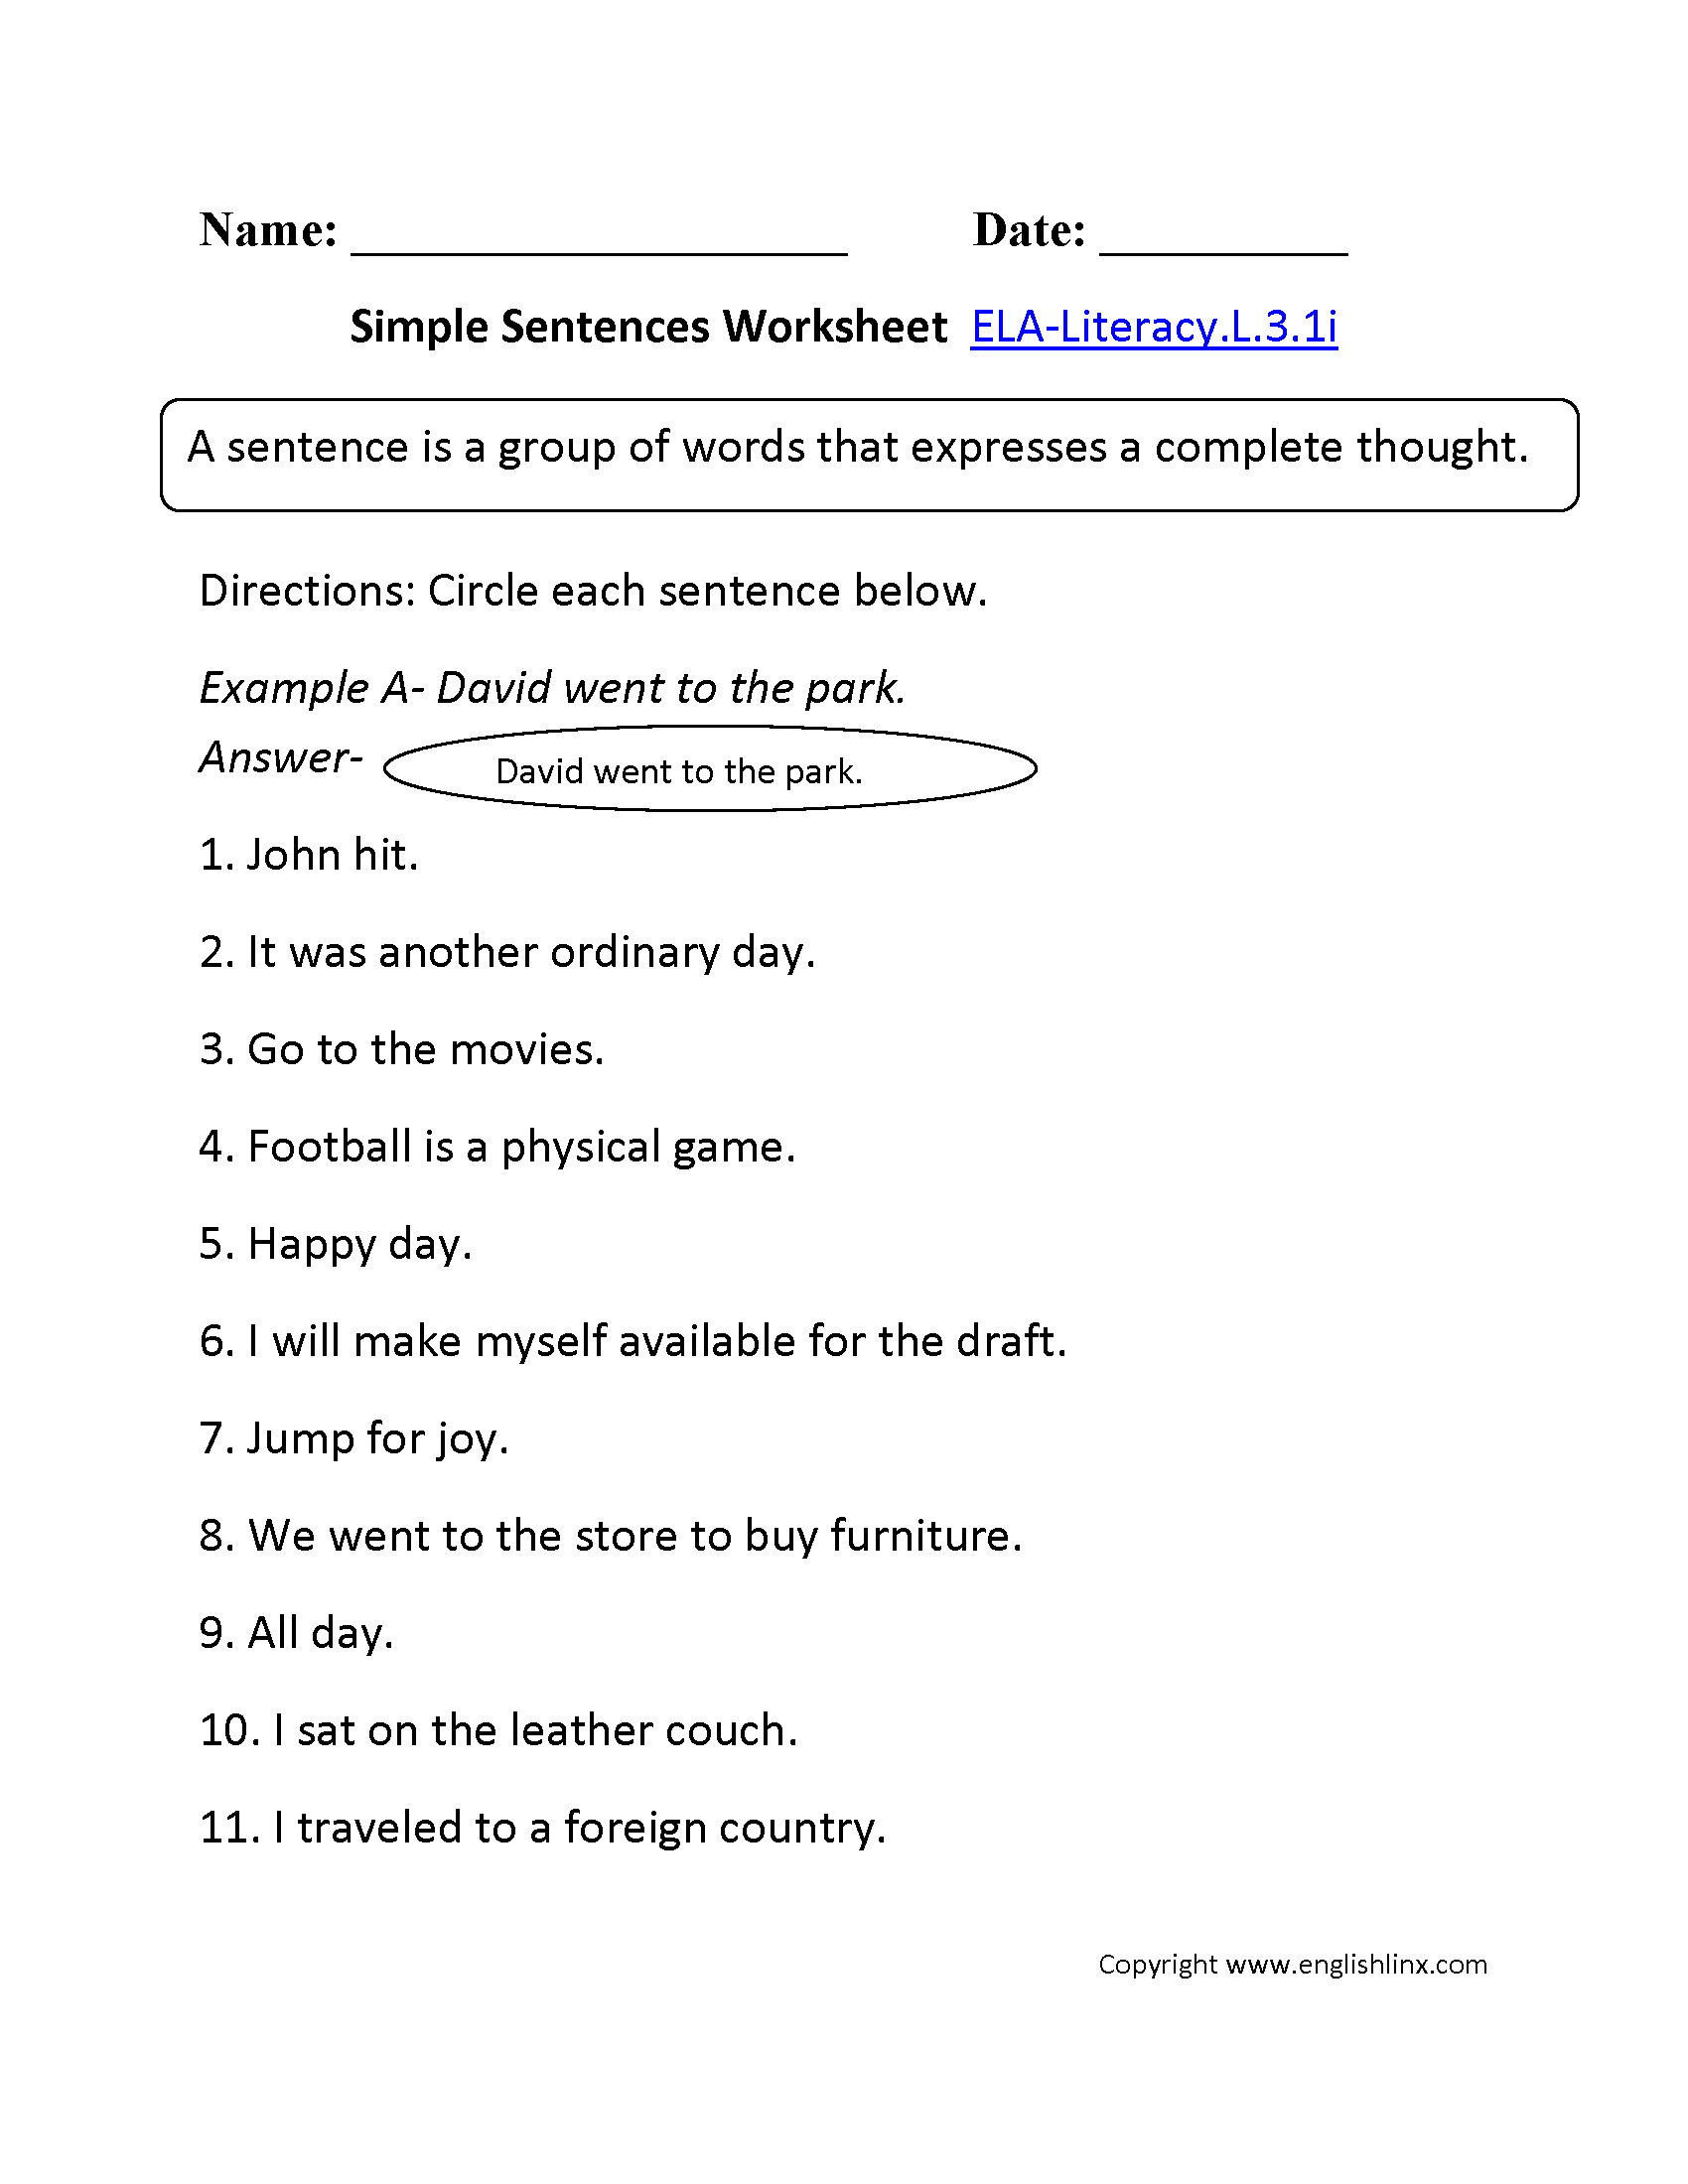 Simple Sentence Worksheet 1 ELA-Literacy.L.3.1i Language Worksheet